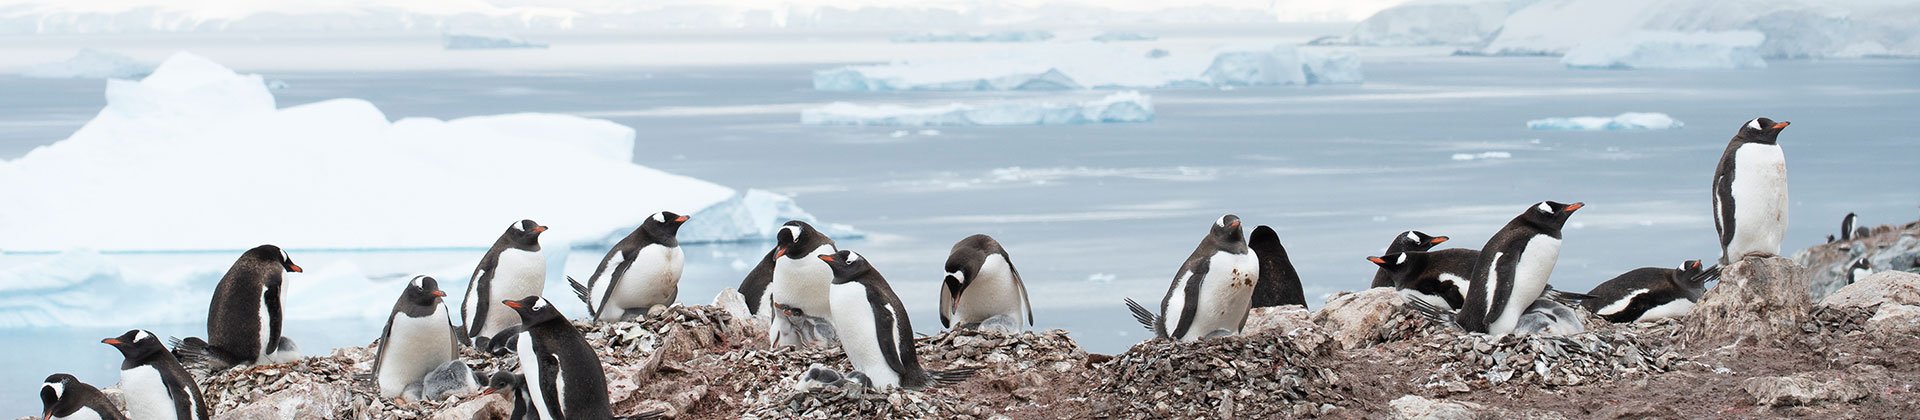 Antarctica, South Georgia & the Falklands by Albatros